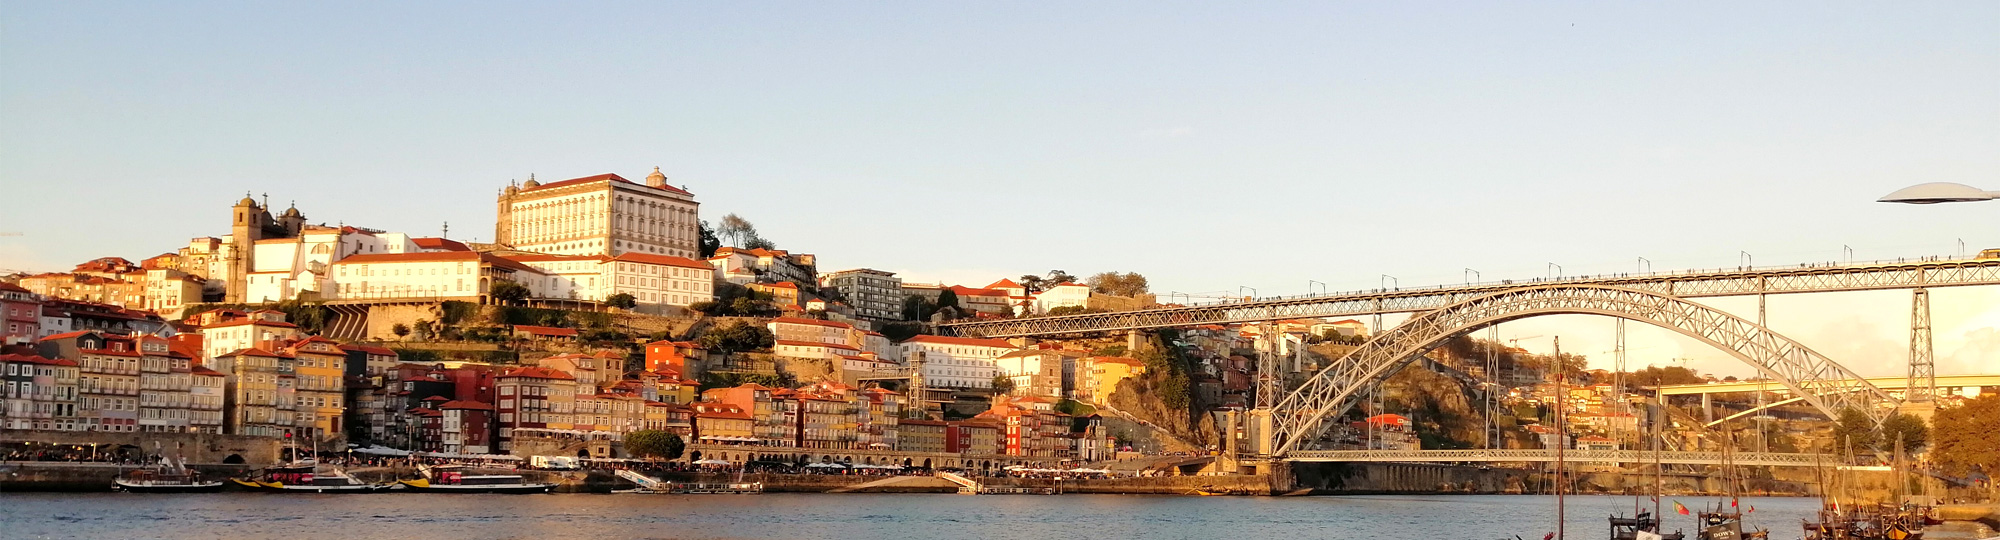 Flâner dans les rues de Porto